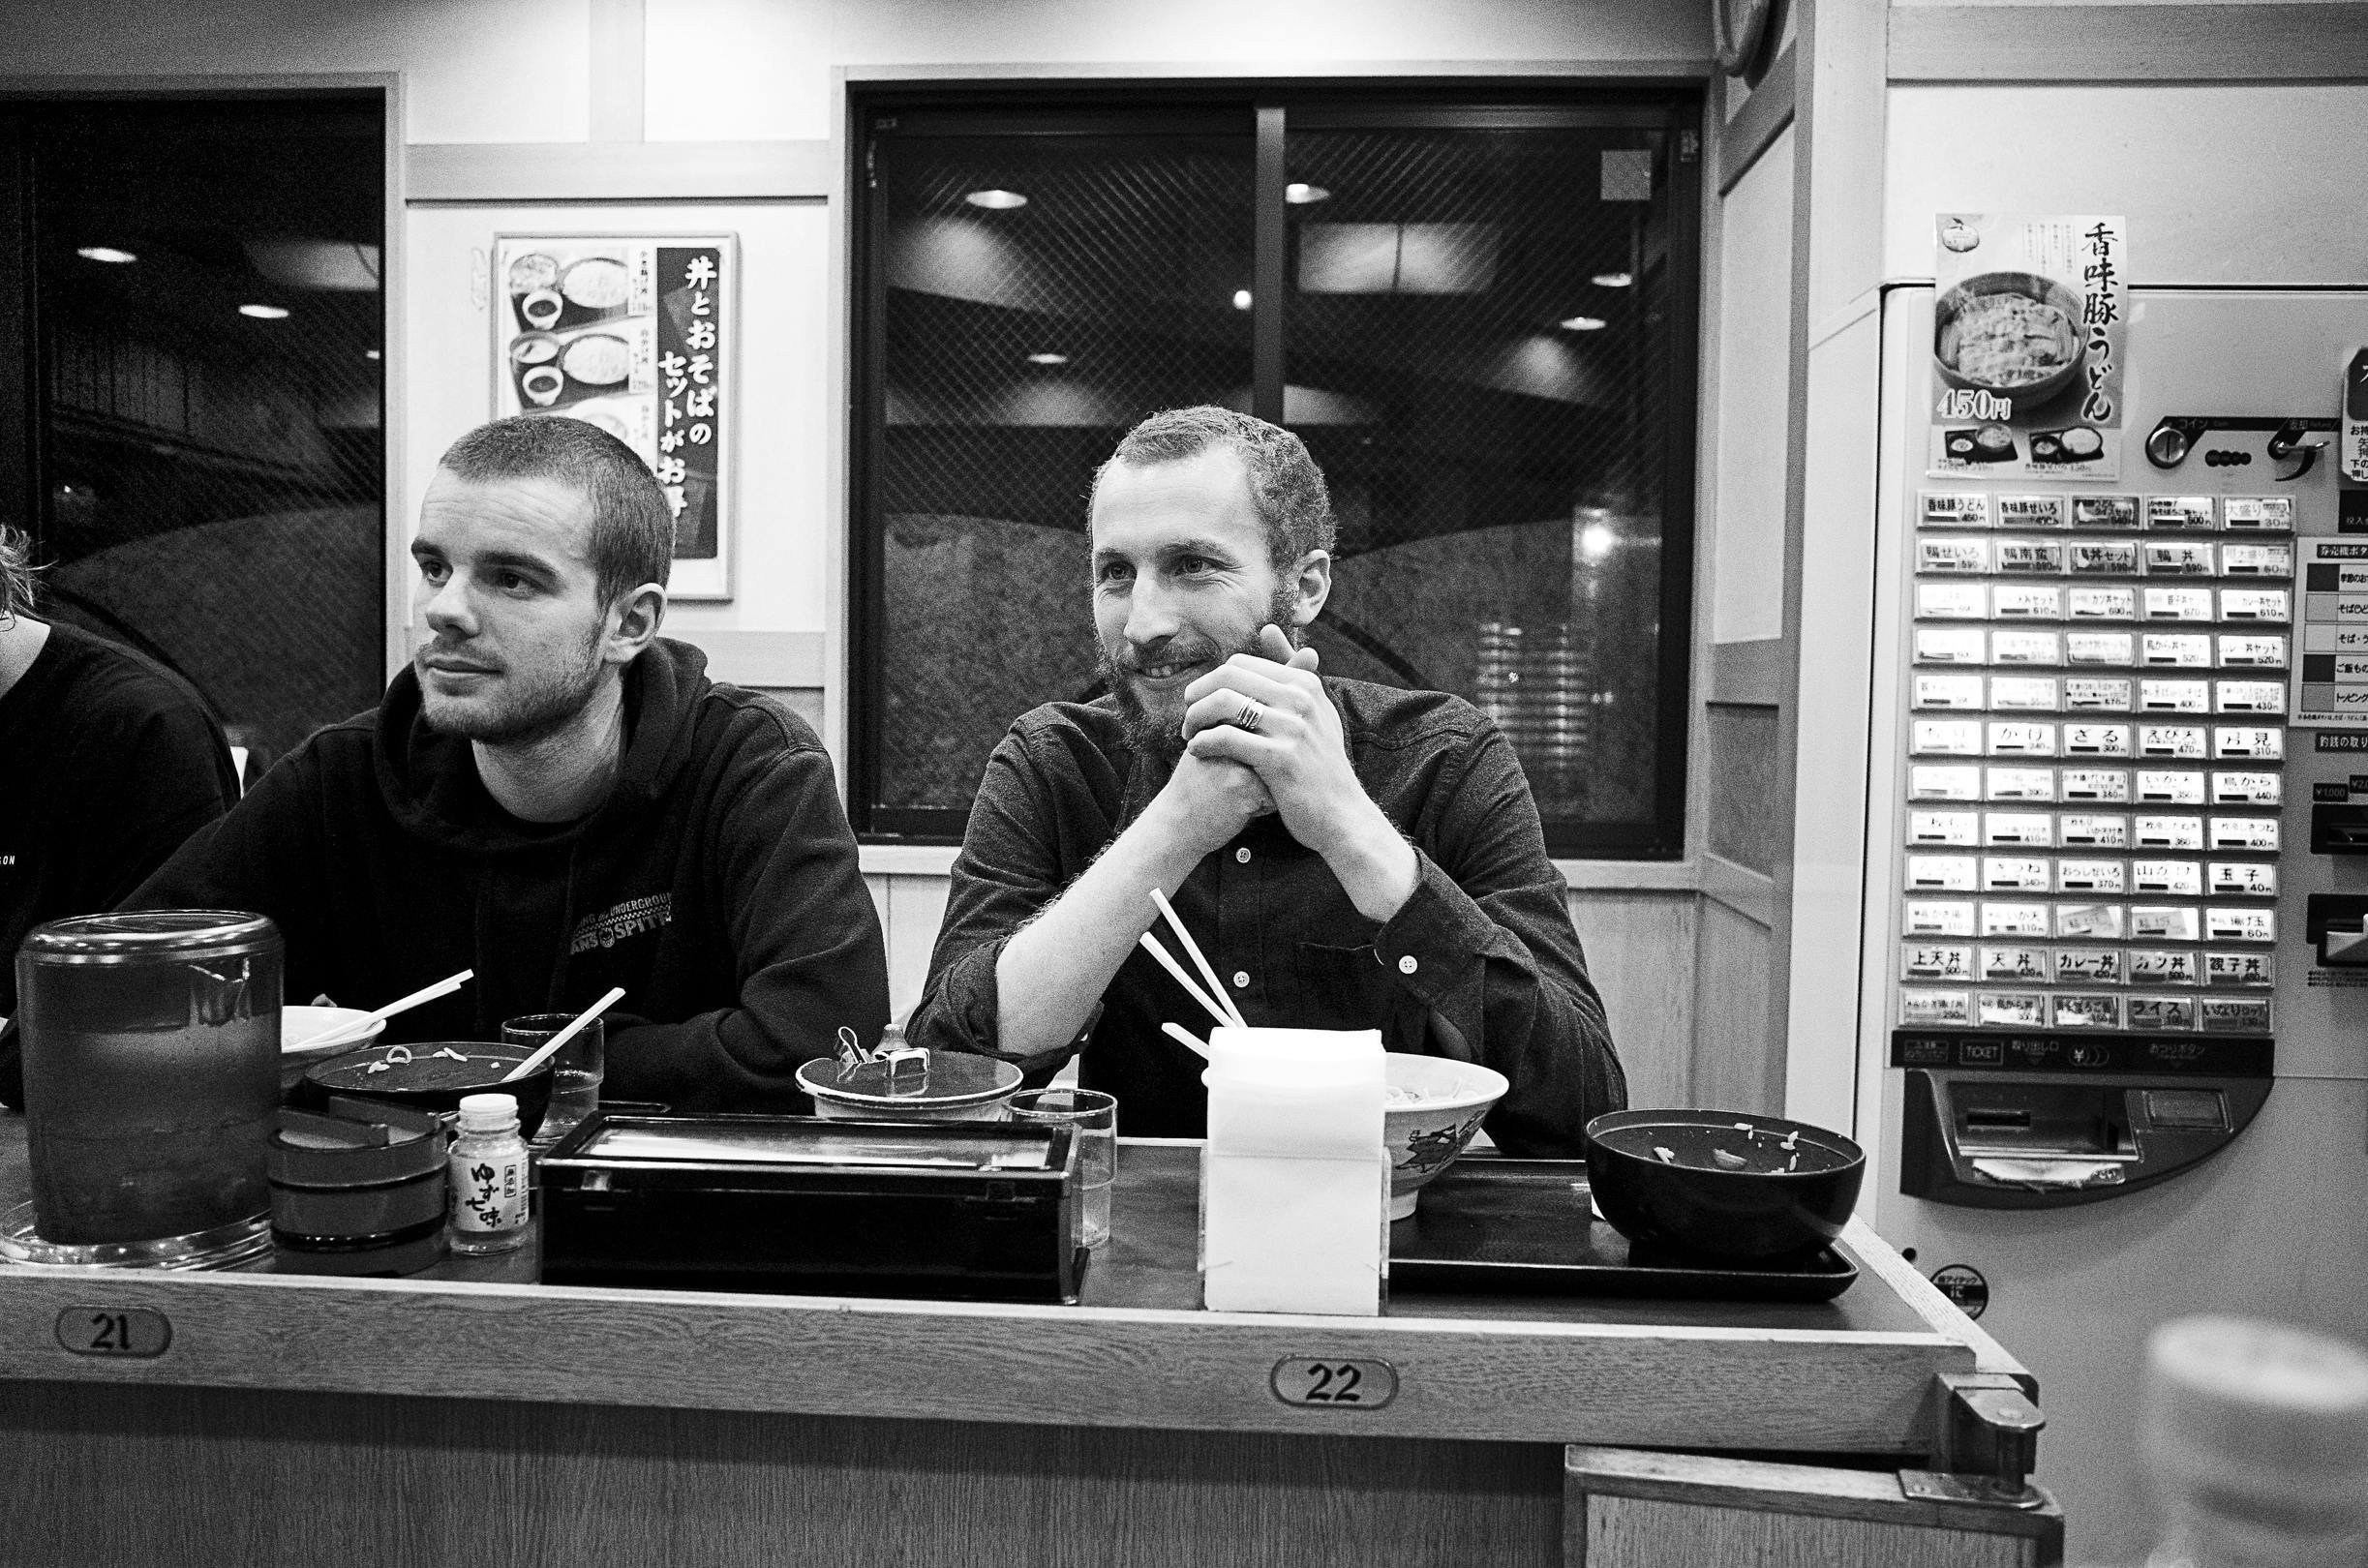 左:マックス、右: ジョセフ。ソバ・ヌードルもお気に入りの様子。 Left: Max, Right: Joseph. Looks like they're both big fans of soba noodles!